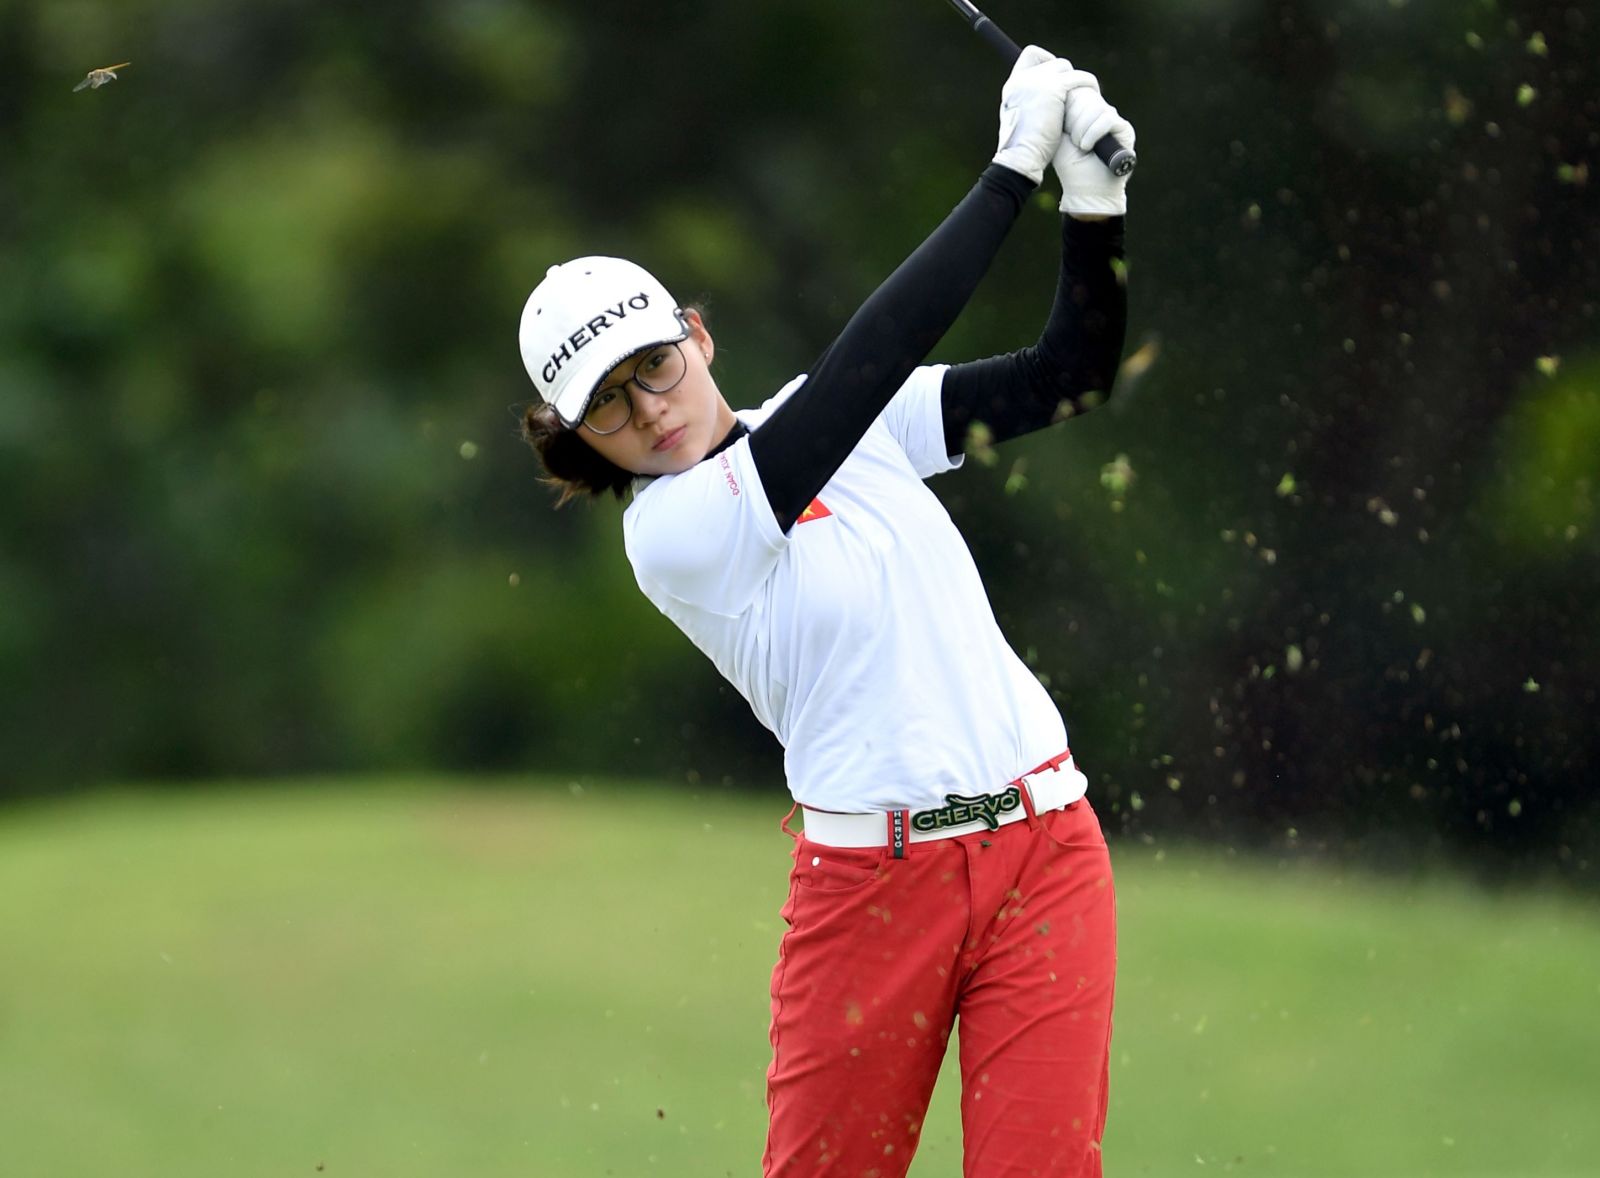 Đoàn Xuân Khuê Minh, golfer nữ duy nhất tại giải chuyên nghiệp nam